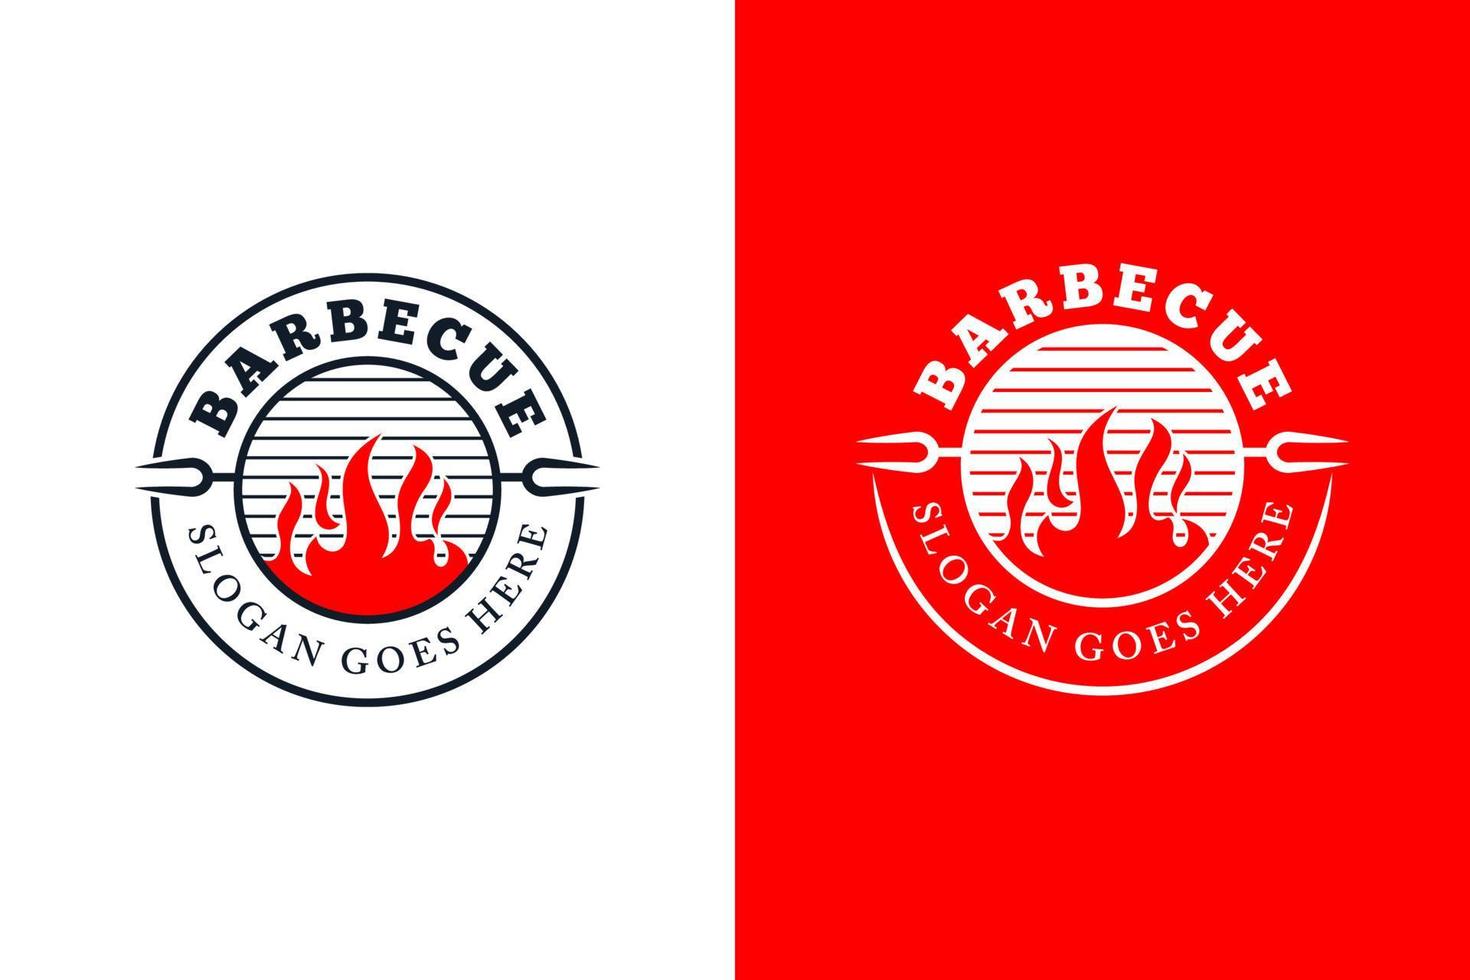 wijnoogst retro rustiek bbq gegrild logo, heet voedsel partij barbecue, barbecue insigne postzegel logo ontwerp, rooster en bar met brand vector